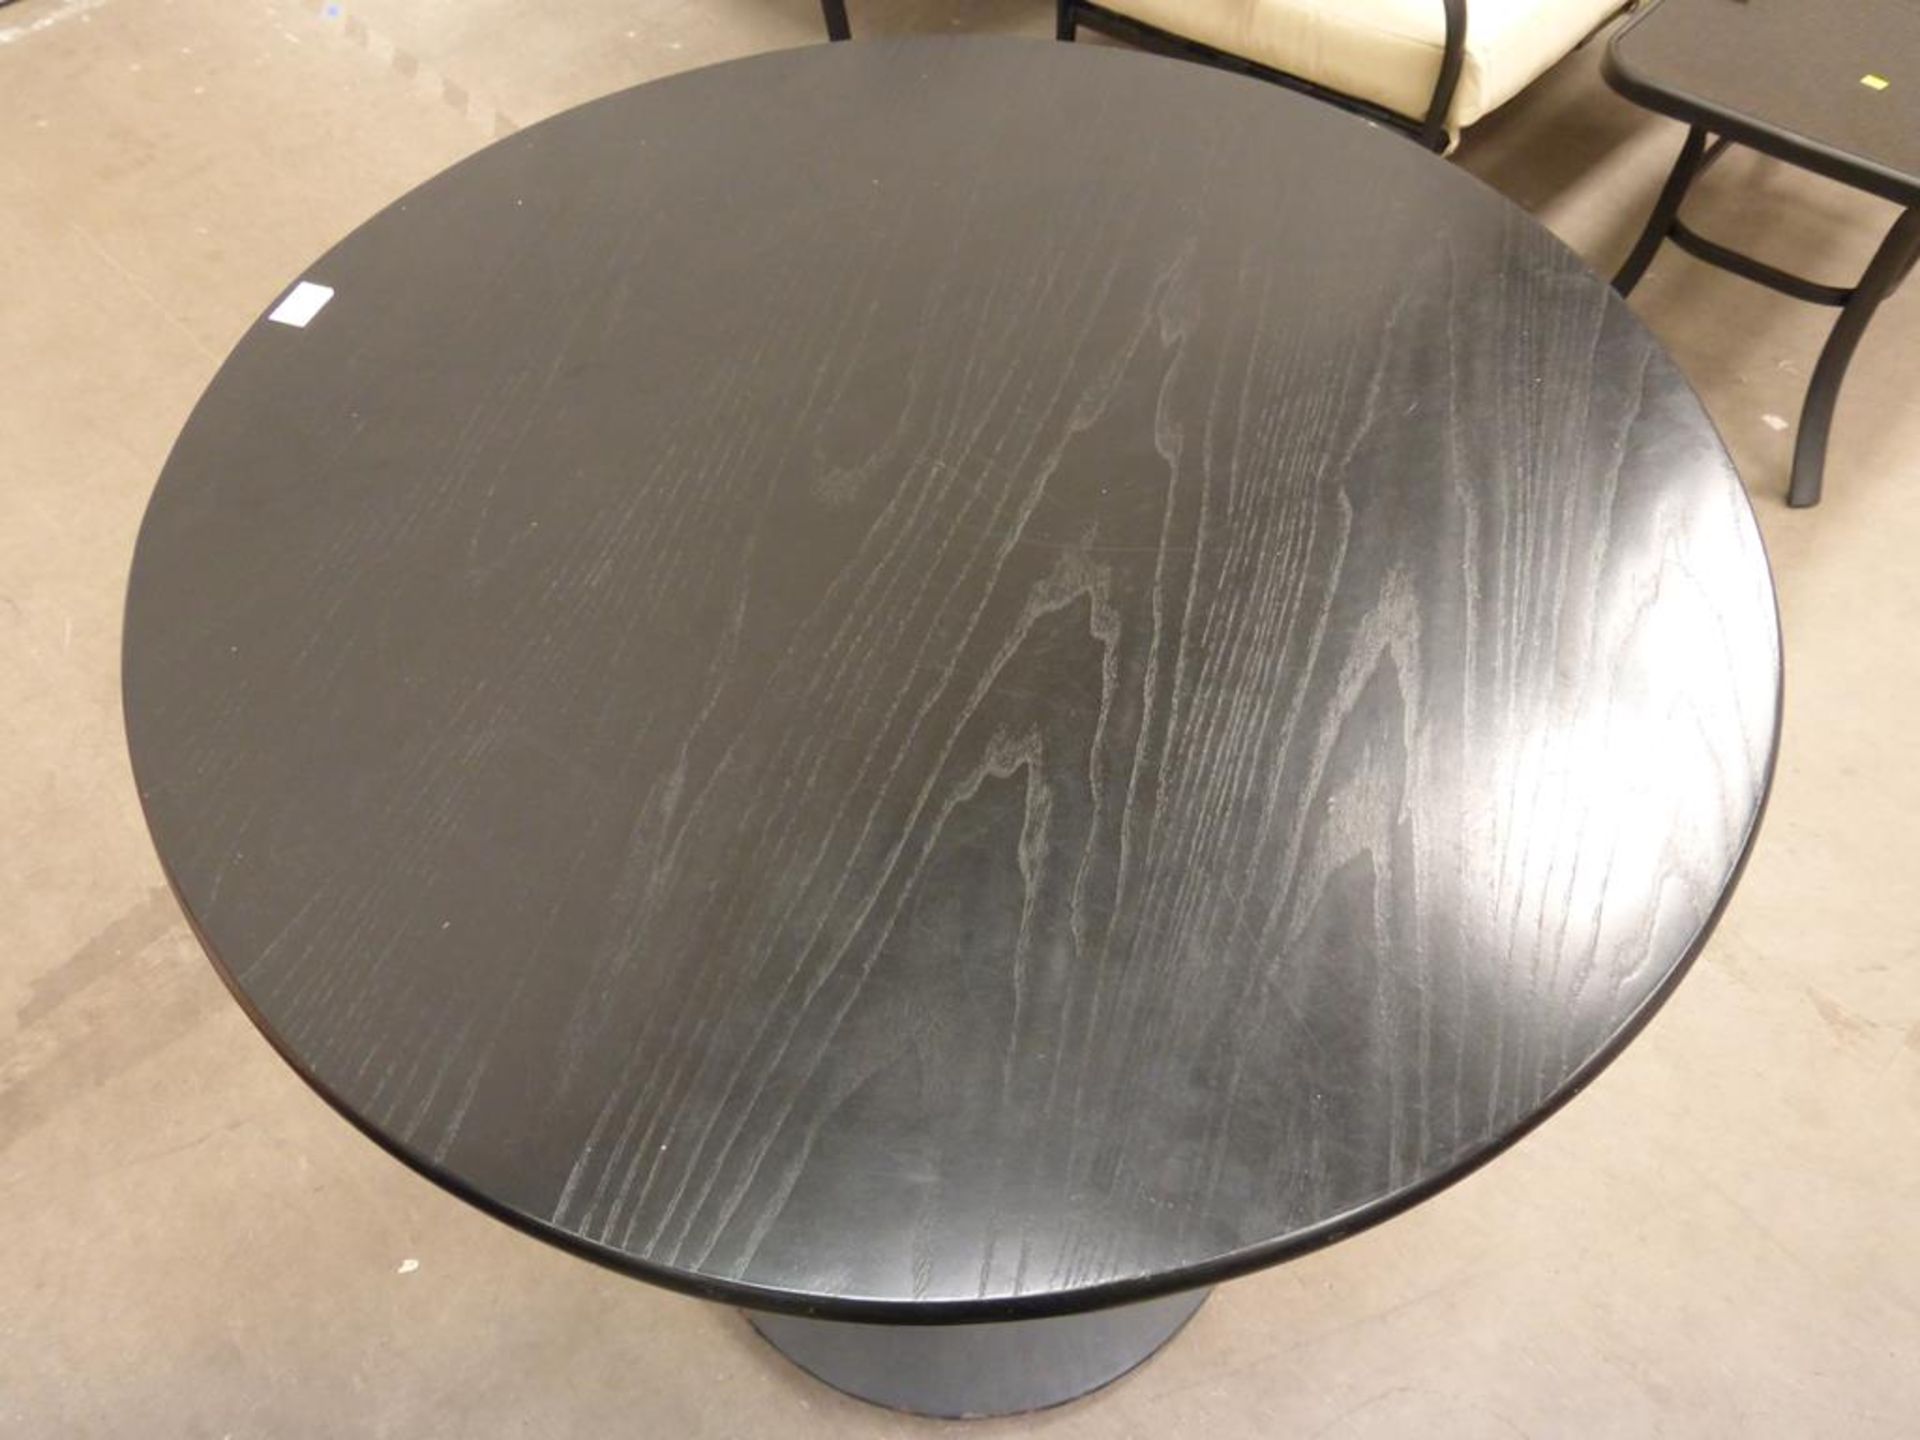 Black Wooden Pedestal Table - Image 3 of 3